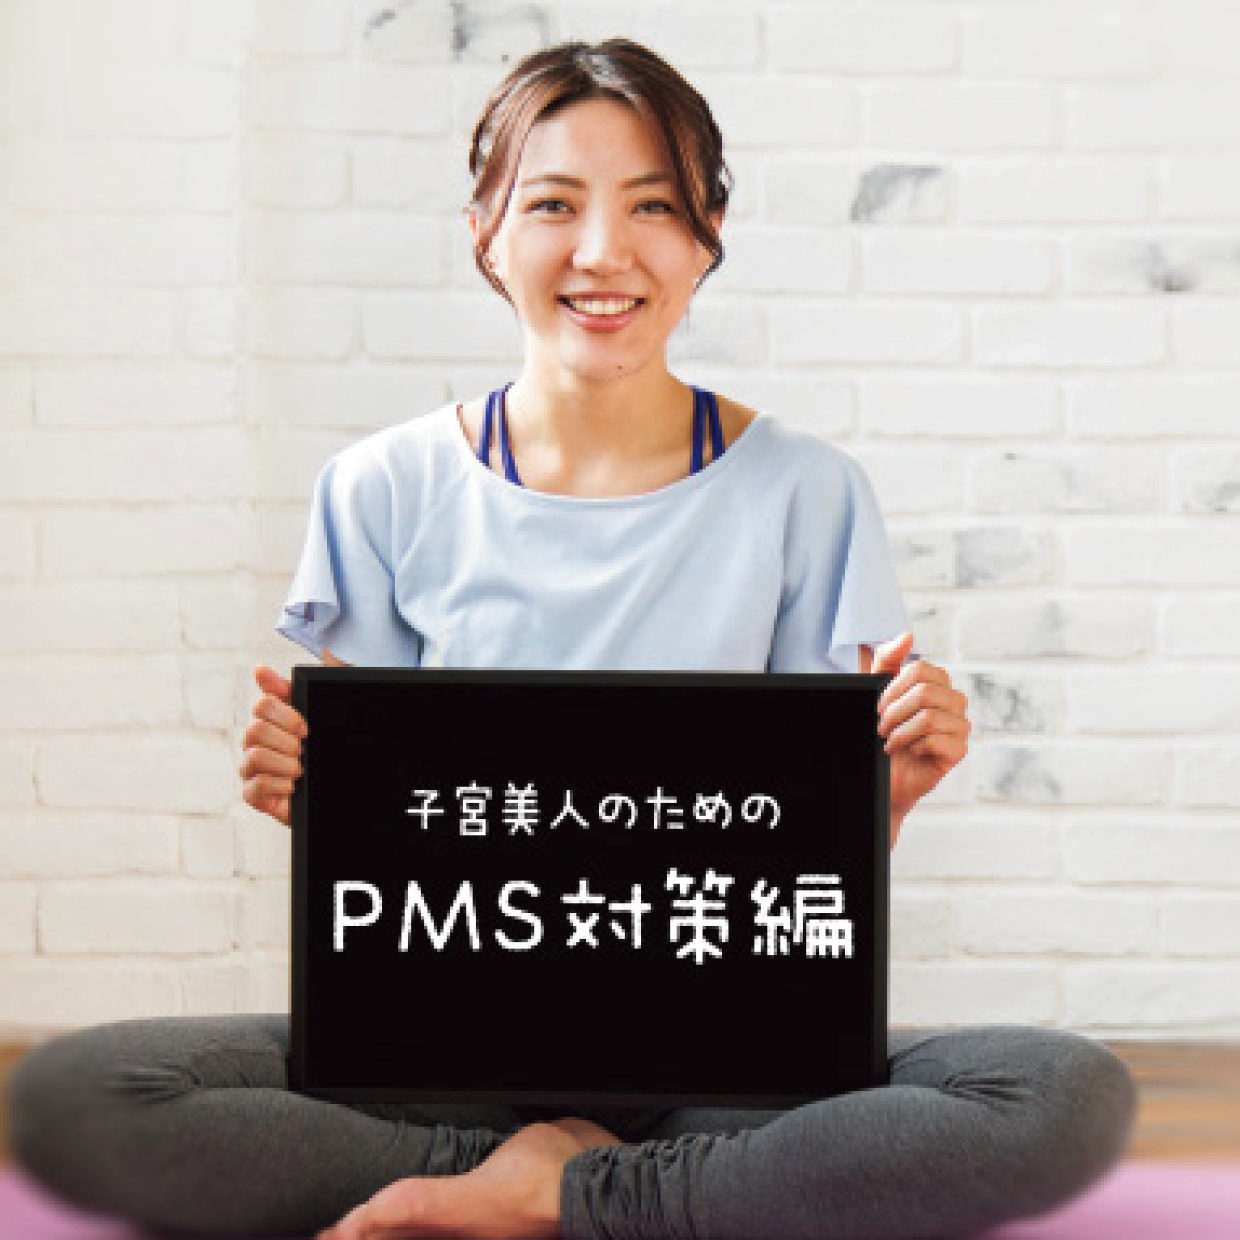  体をゆるめるヨガで、PMS・生理痛を緩和しよう！ 